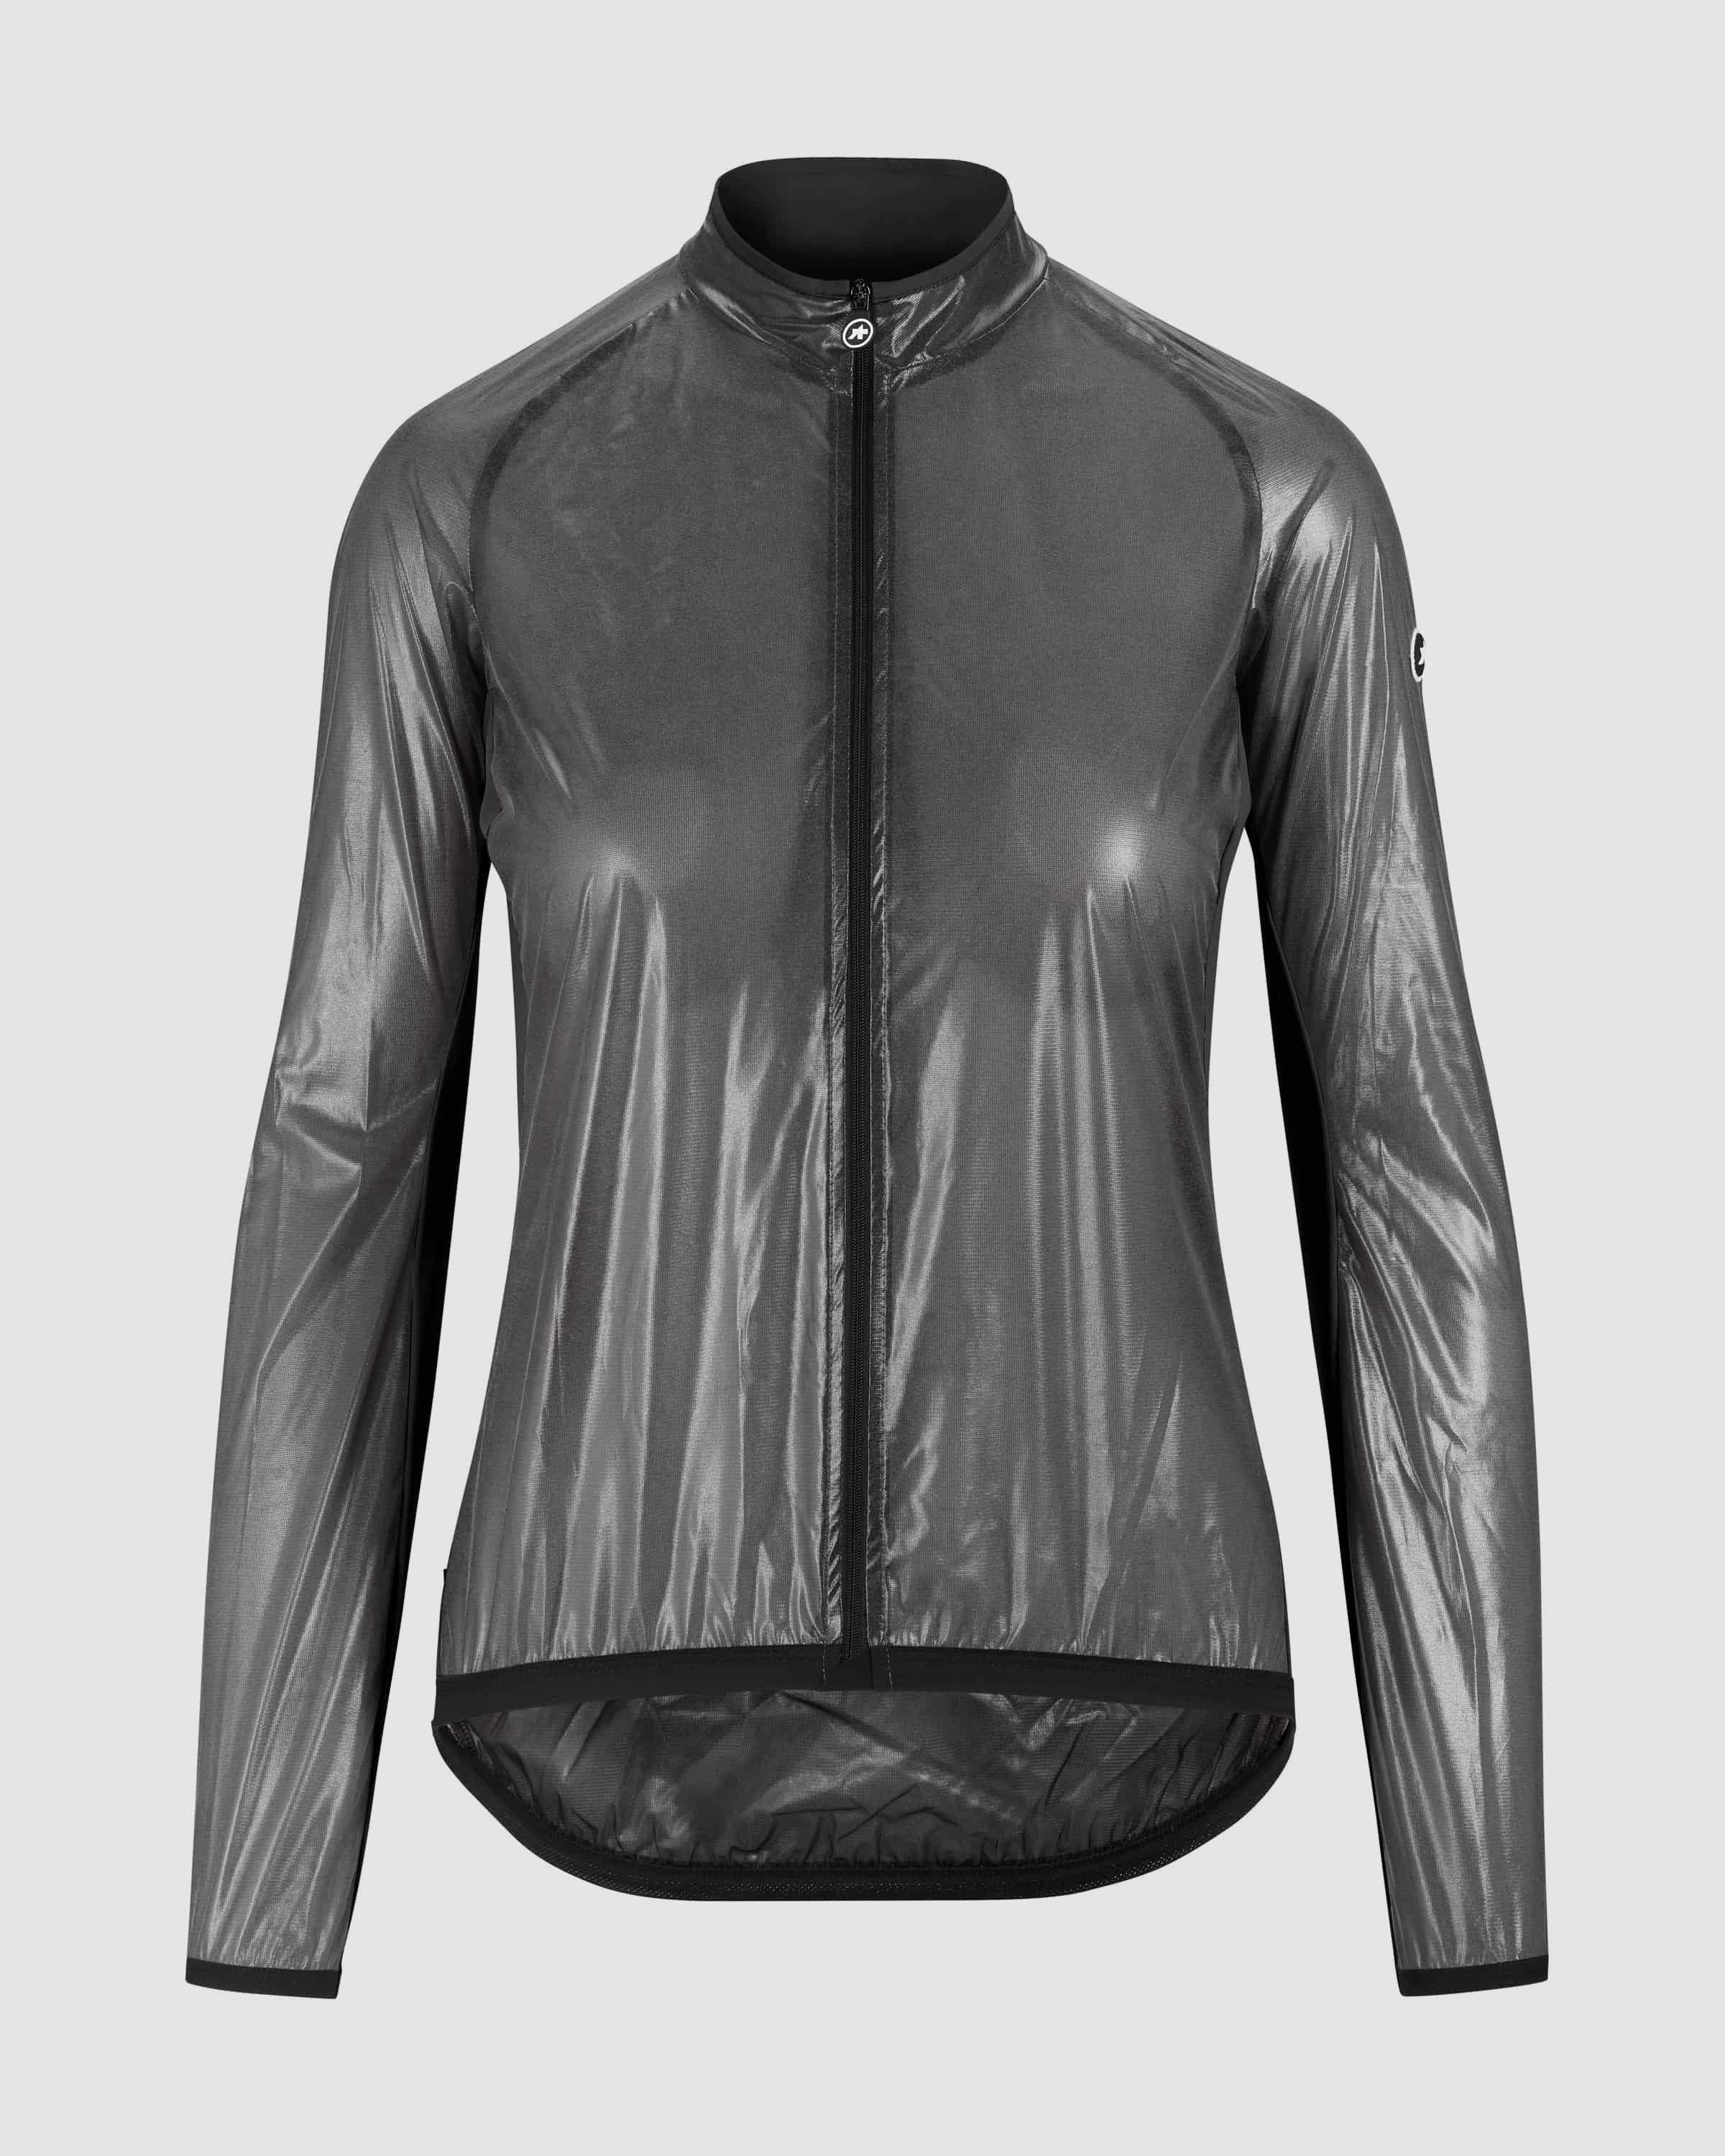 UMA GT Clima Jacket EVO, blackSeries » ASSOS Of Switzerland